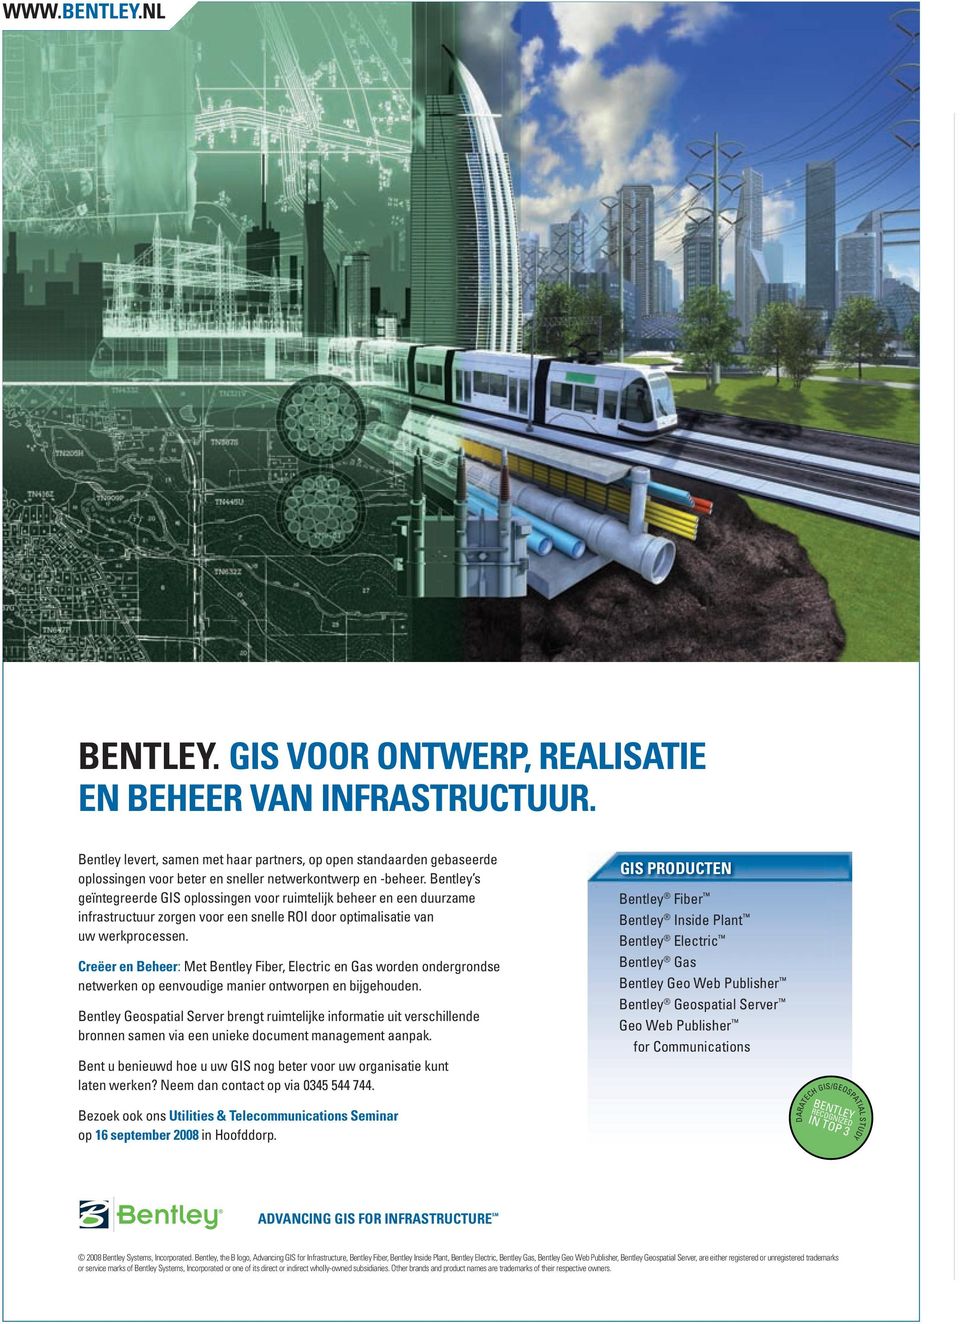 Bentley s geïntegreerde GIS oplossingen voor ruimtelijk beheer en een duurzame infrastructuur zorgen voor een snelle ROI door optimalisatie van uw werkprocessen.